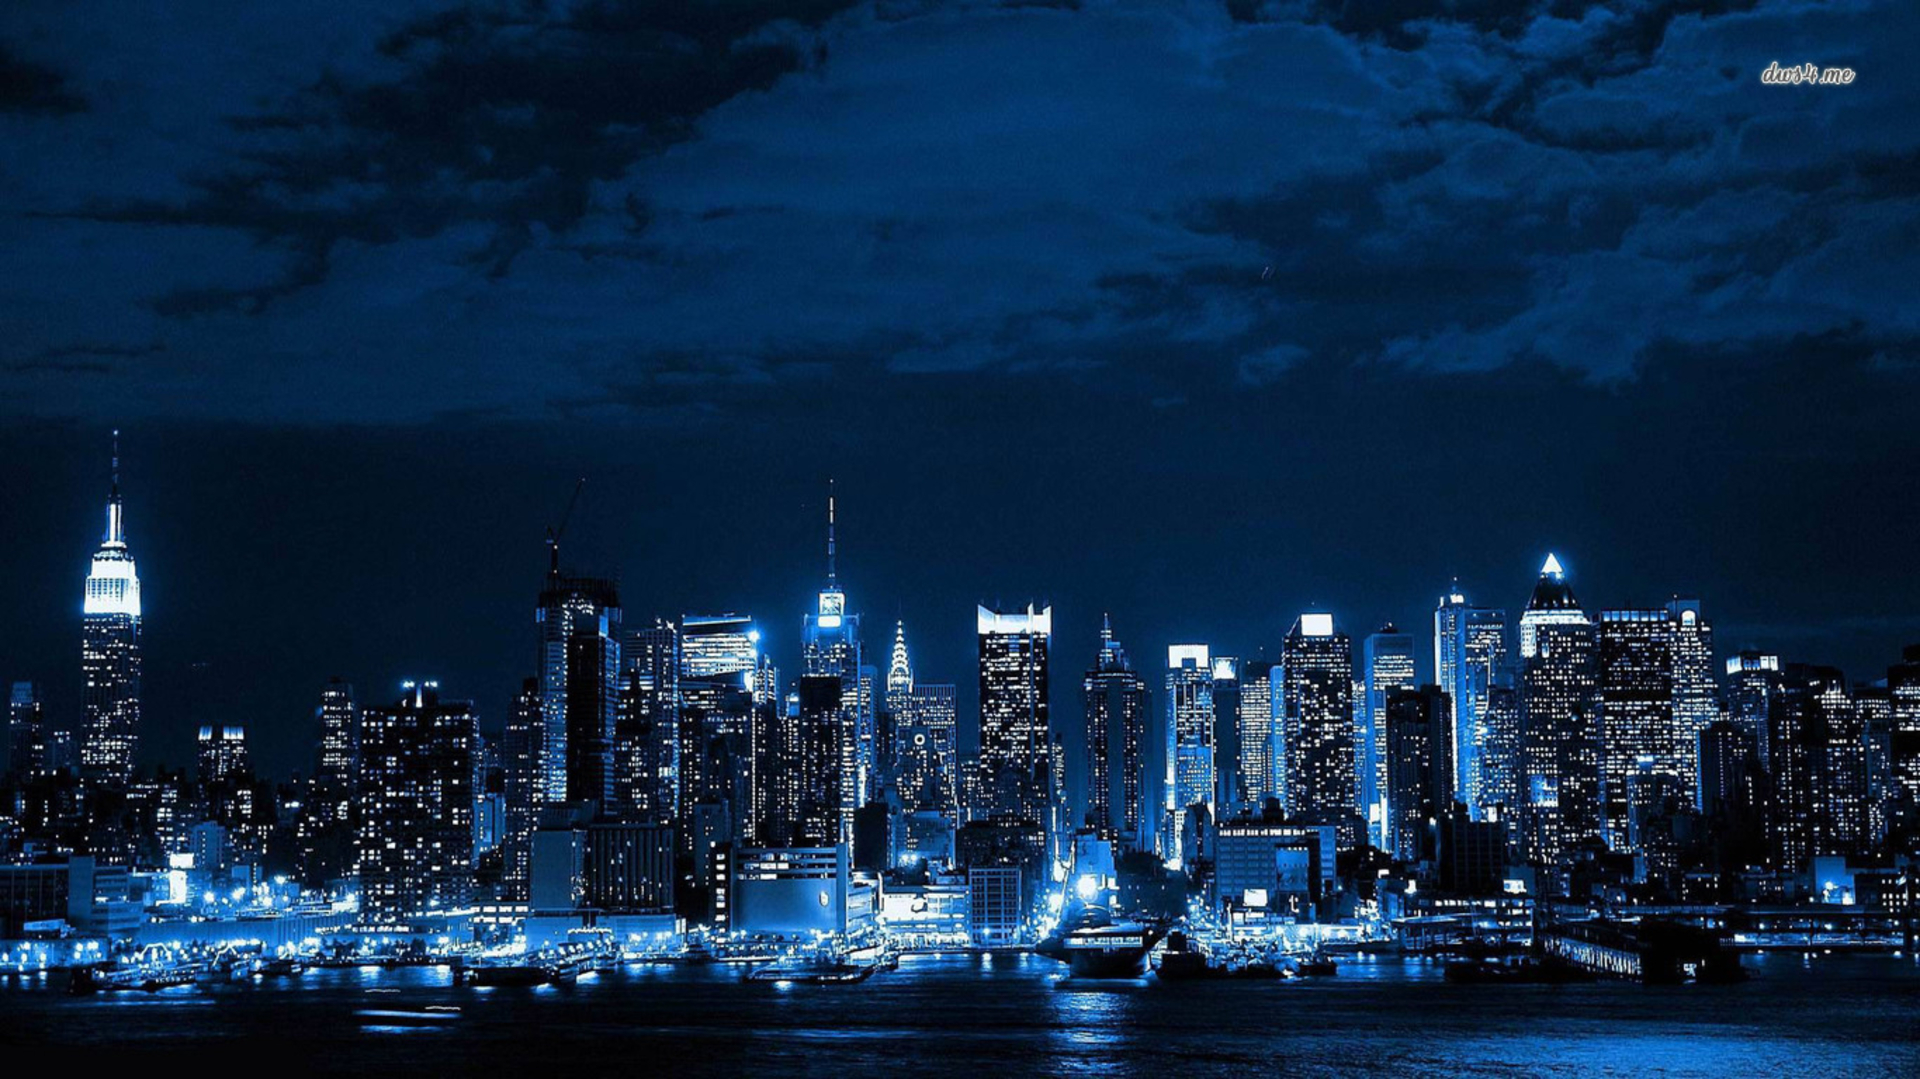 Free download Pixel Desktop Wallpaper New York City Skyline